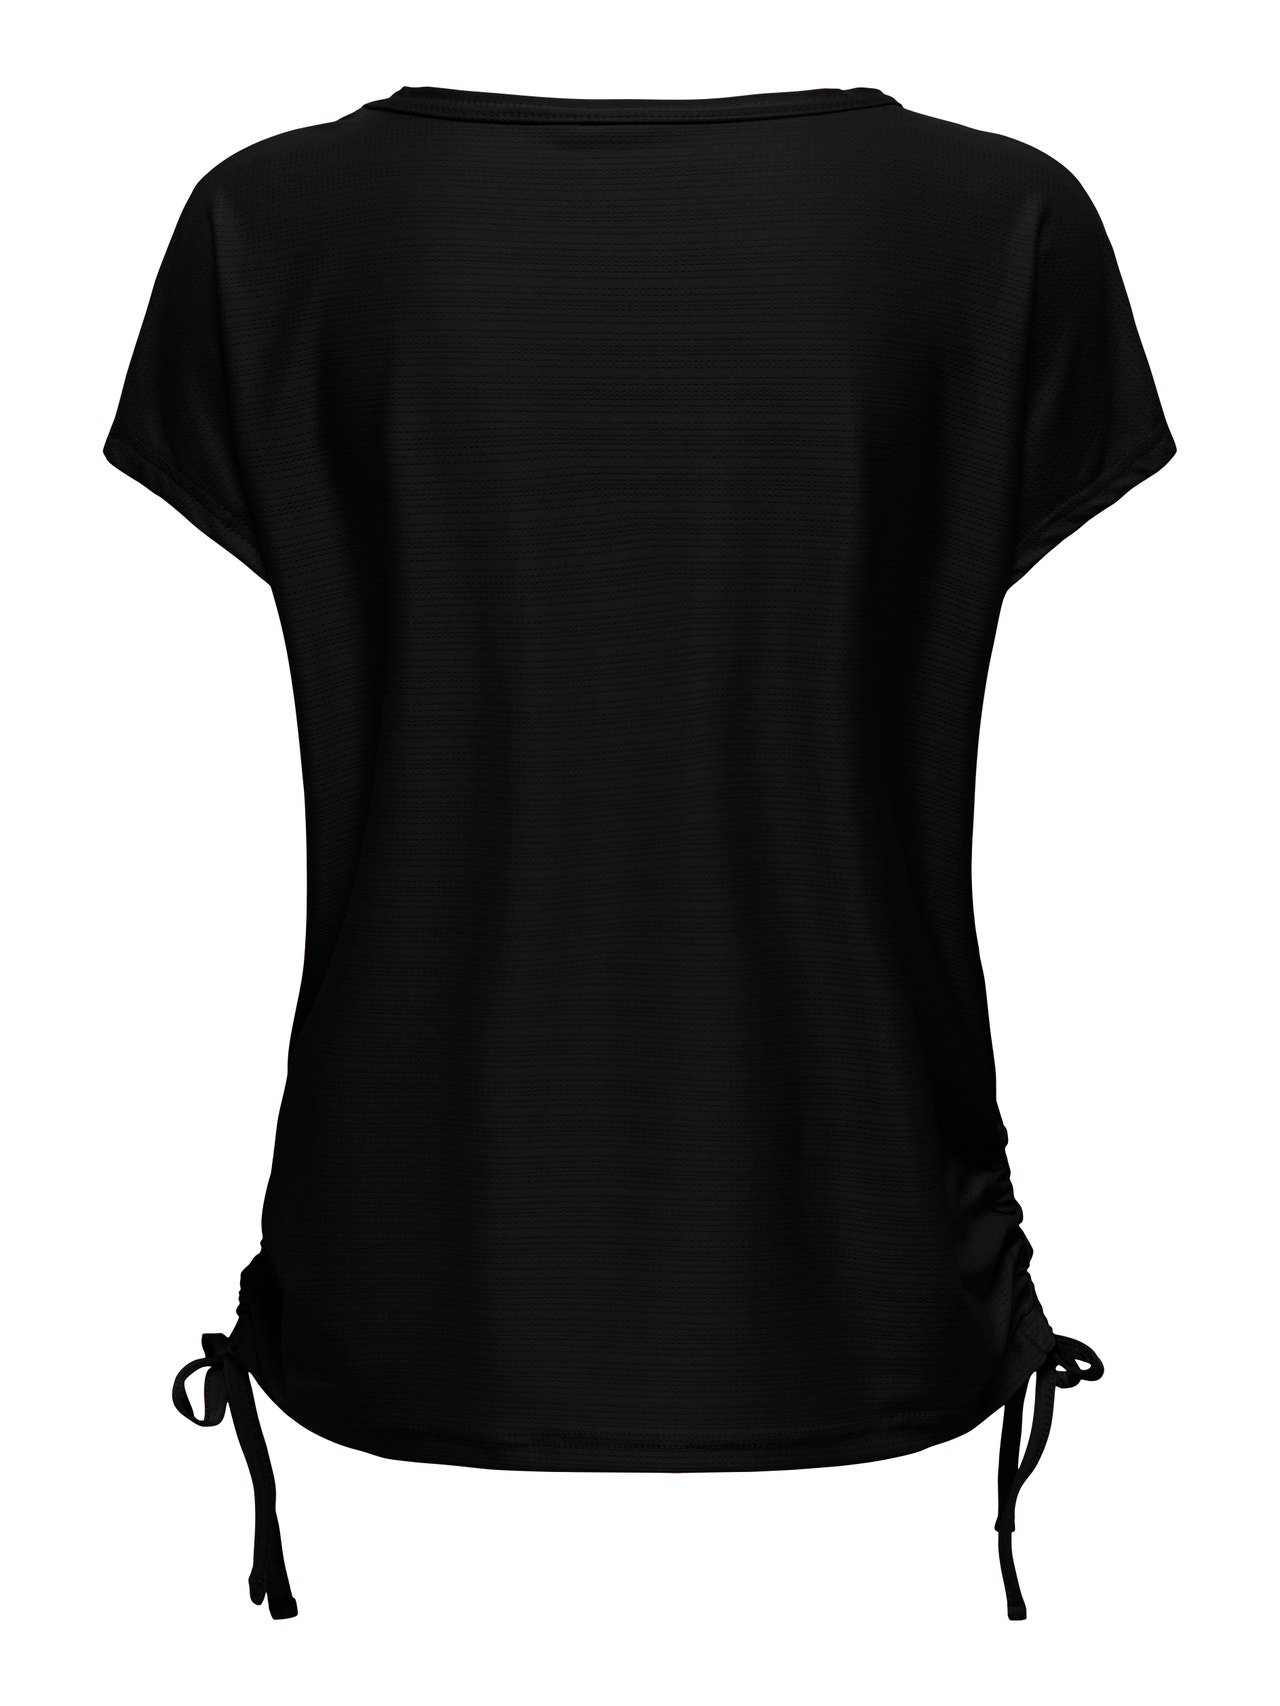 ONLY Camisetas Corte loose Cuello en V -Black - 15298795